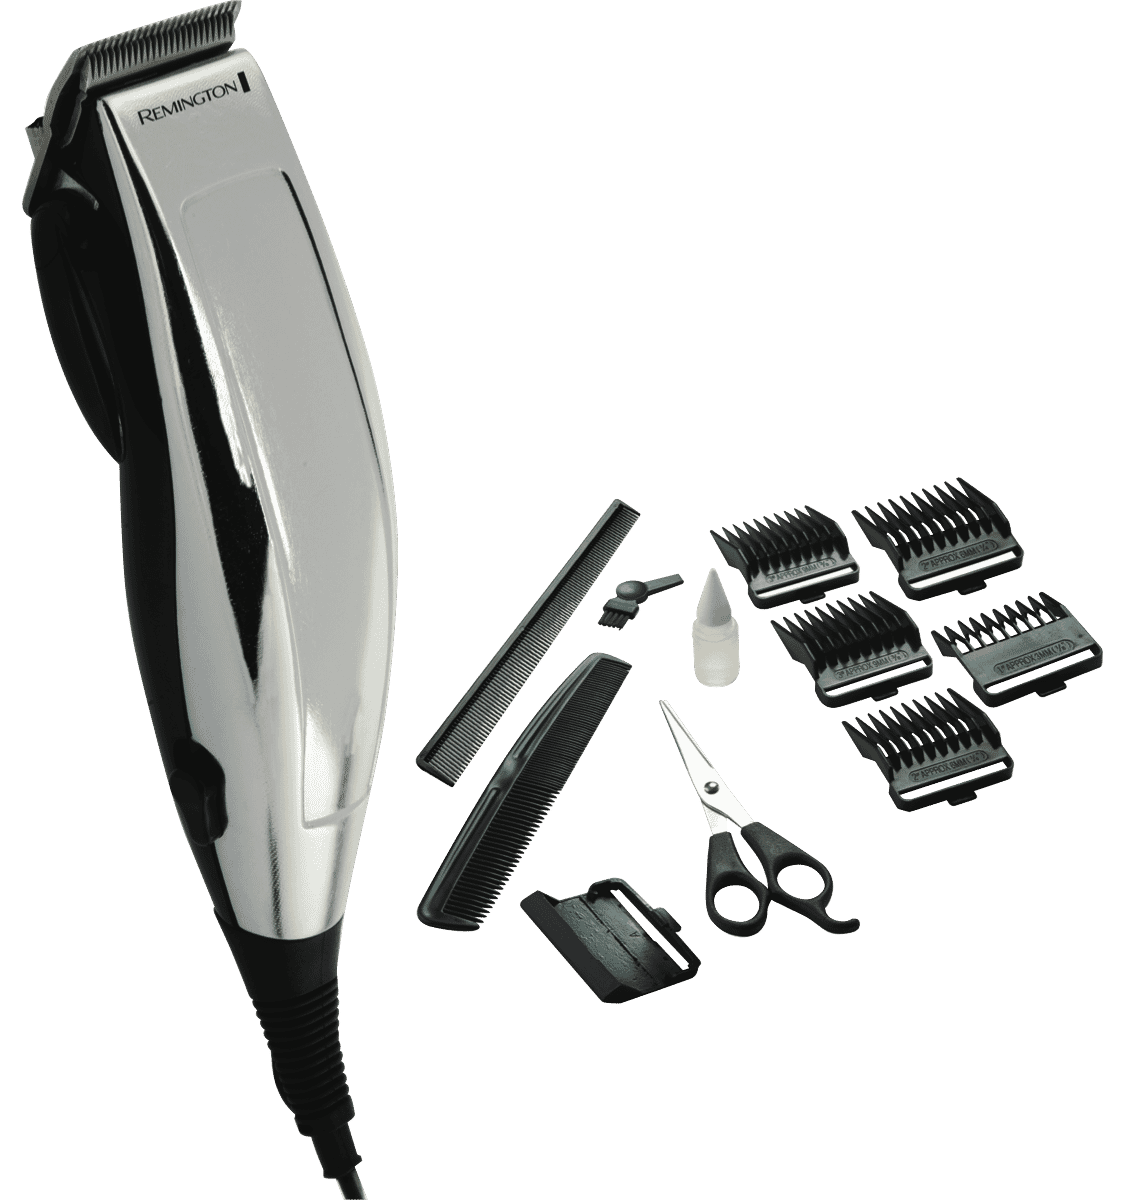 remington turbo pro haircut kit